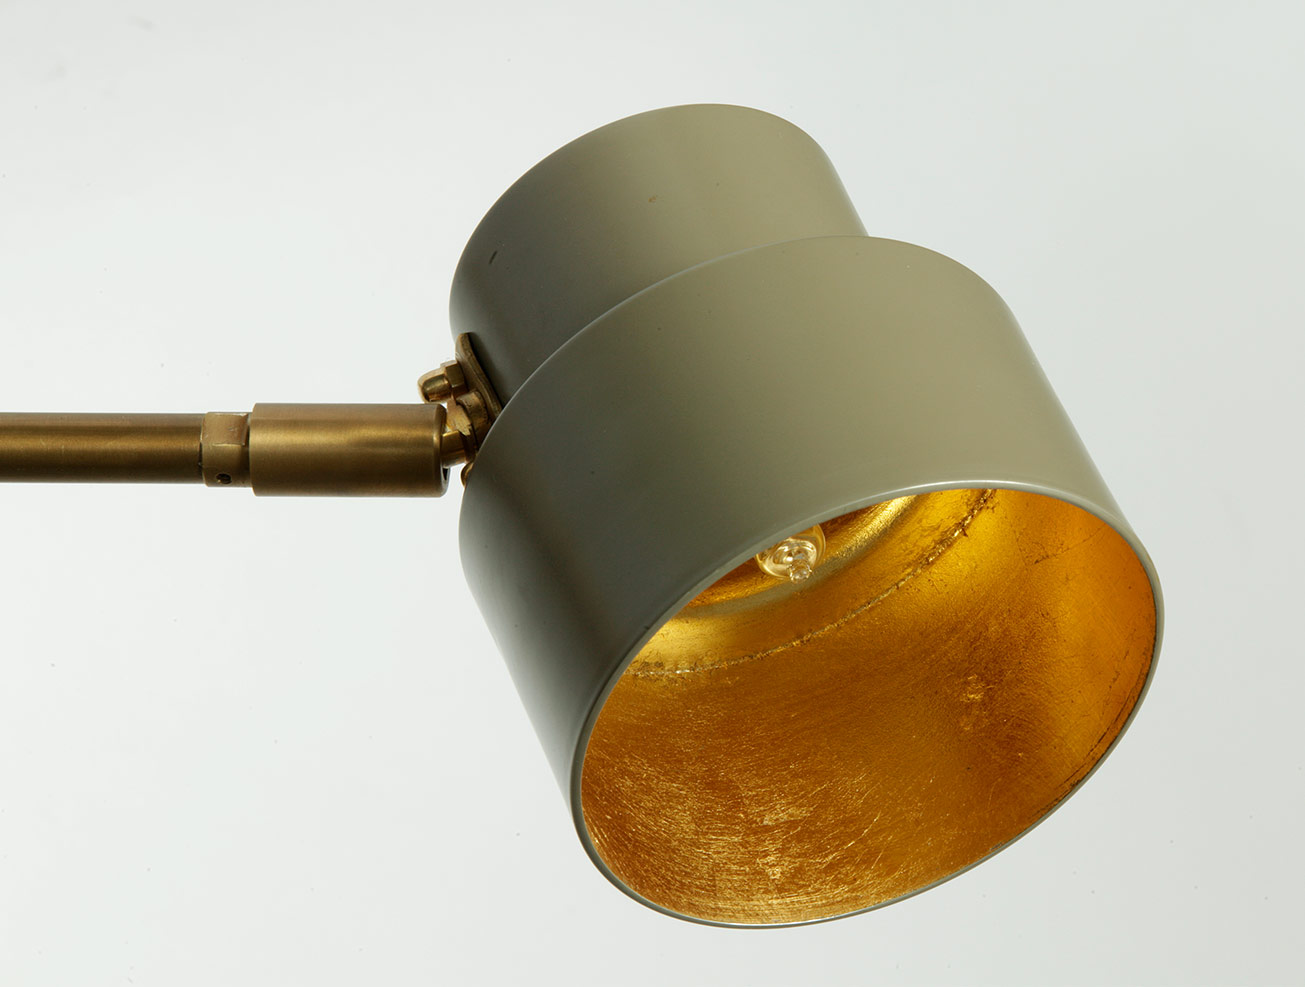 Klassisch-moderner 6-armiger Messing-Leuchter aus Italien: Schirm des kleinen Modells Ø 10 cm in beige-grau (RAL 7006) mit Innenseite in Blattgold